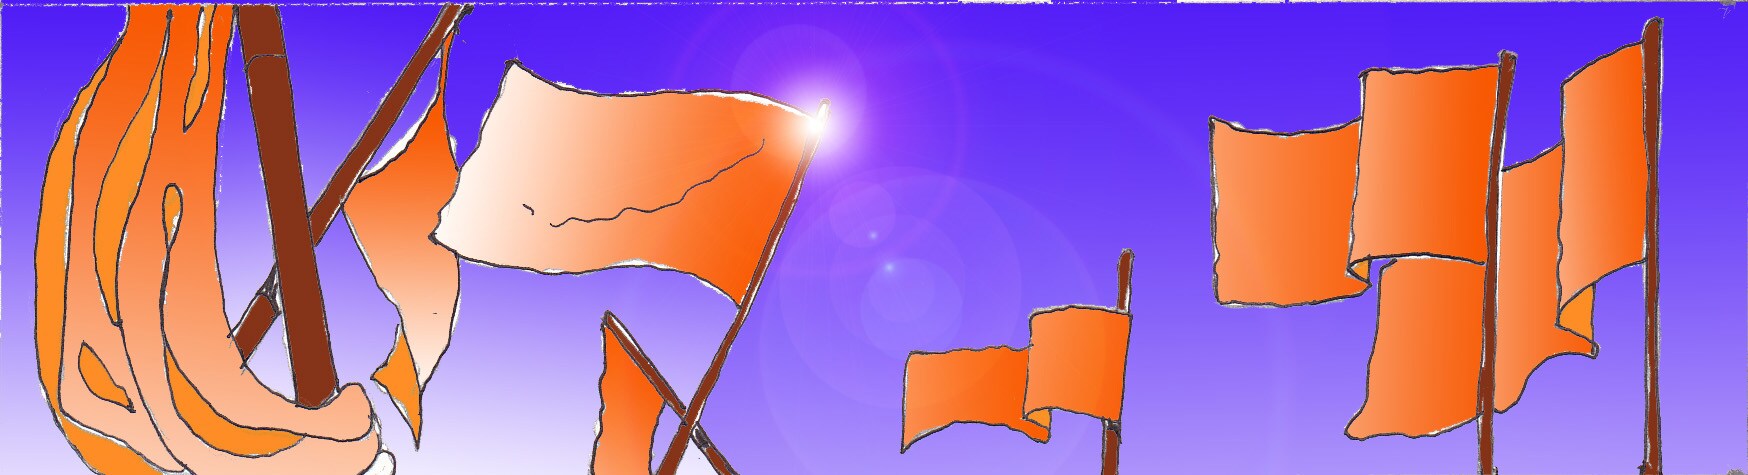 Immagine di bandiere arancioni (Per leggerne la descrizione proseguire nel link). Una serie di bandiere e di vessilli arancioni al vento, montati su bastoni di legno, su di uno sfondo di cielo indaco.